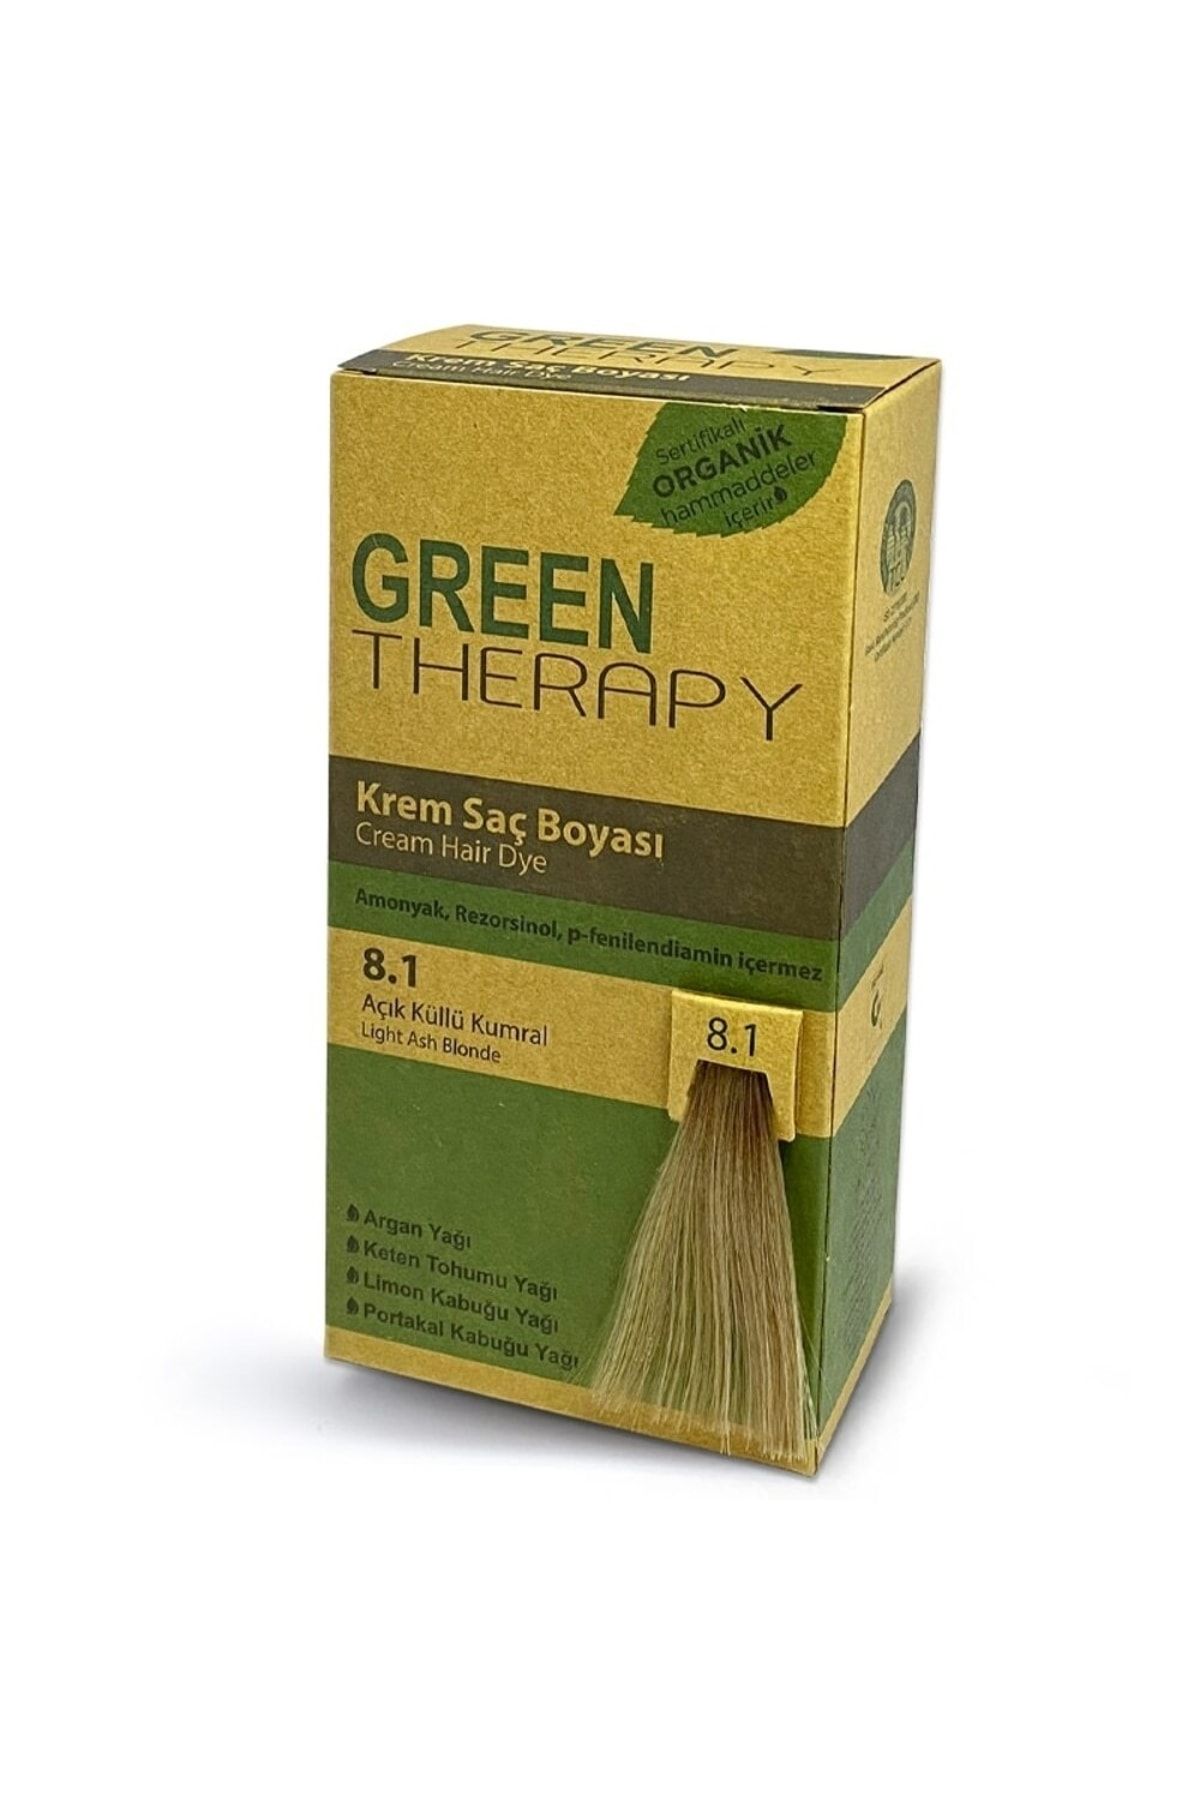 Green Therapy Krem Saç Boyası 5,15 Buzlu Kahve